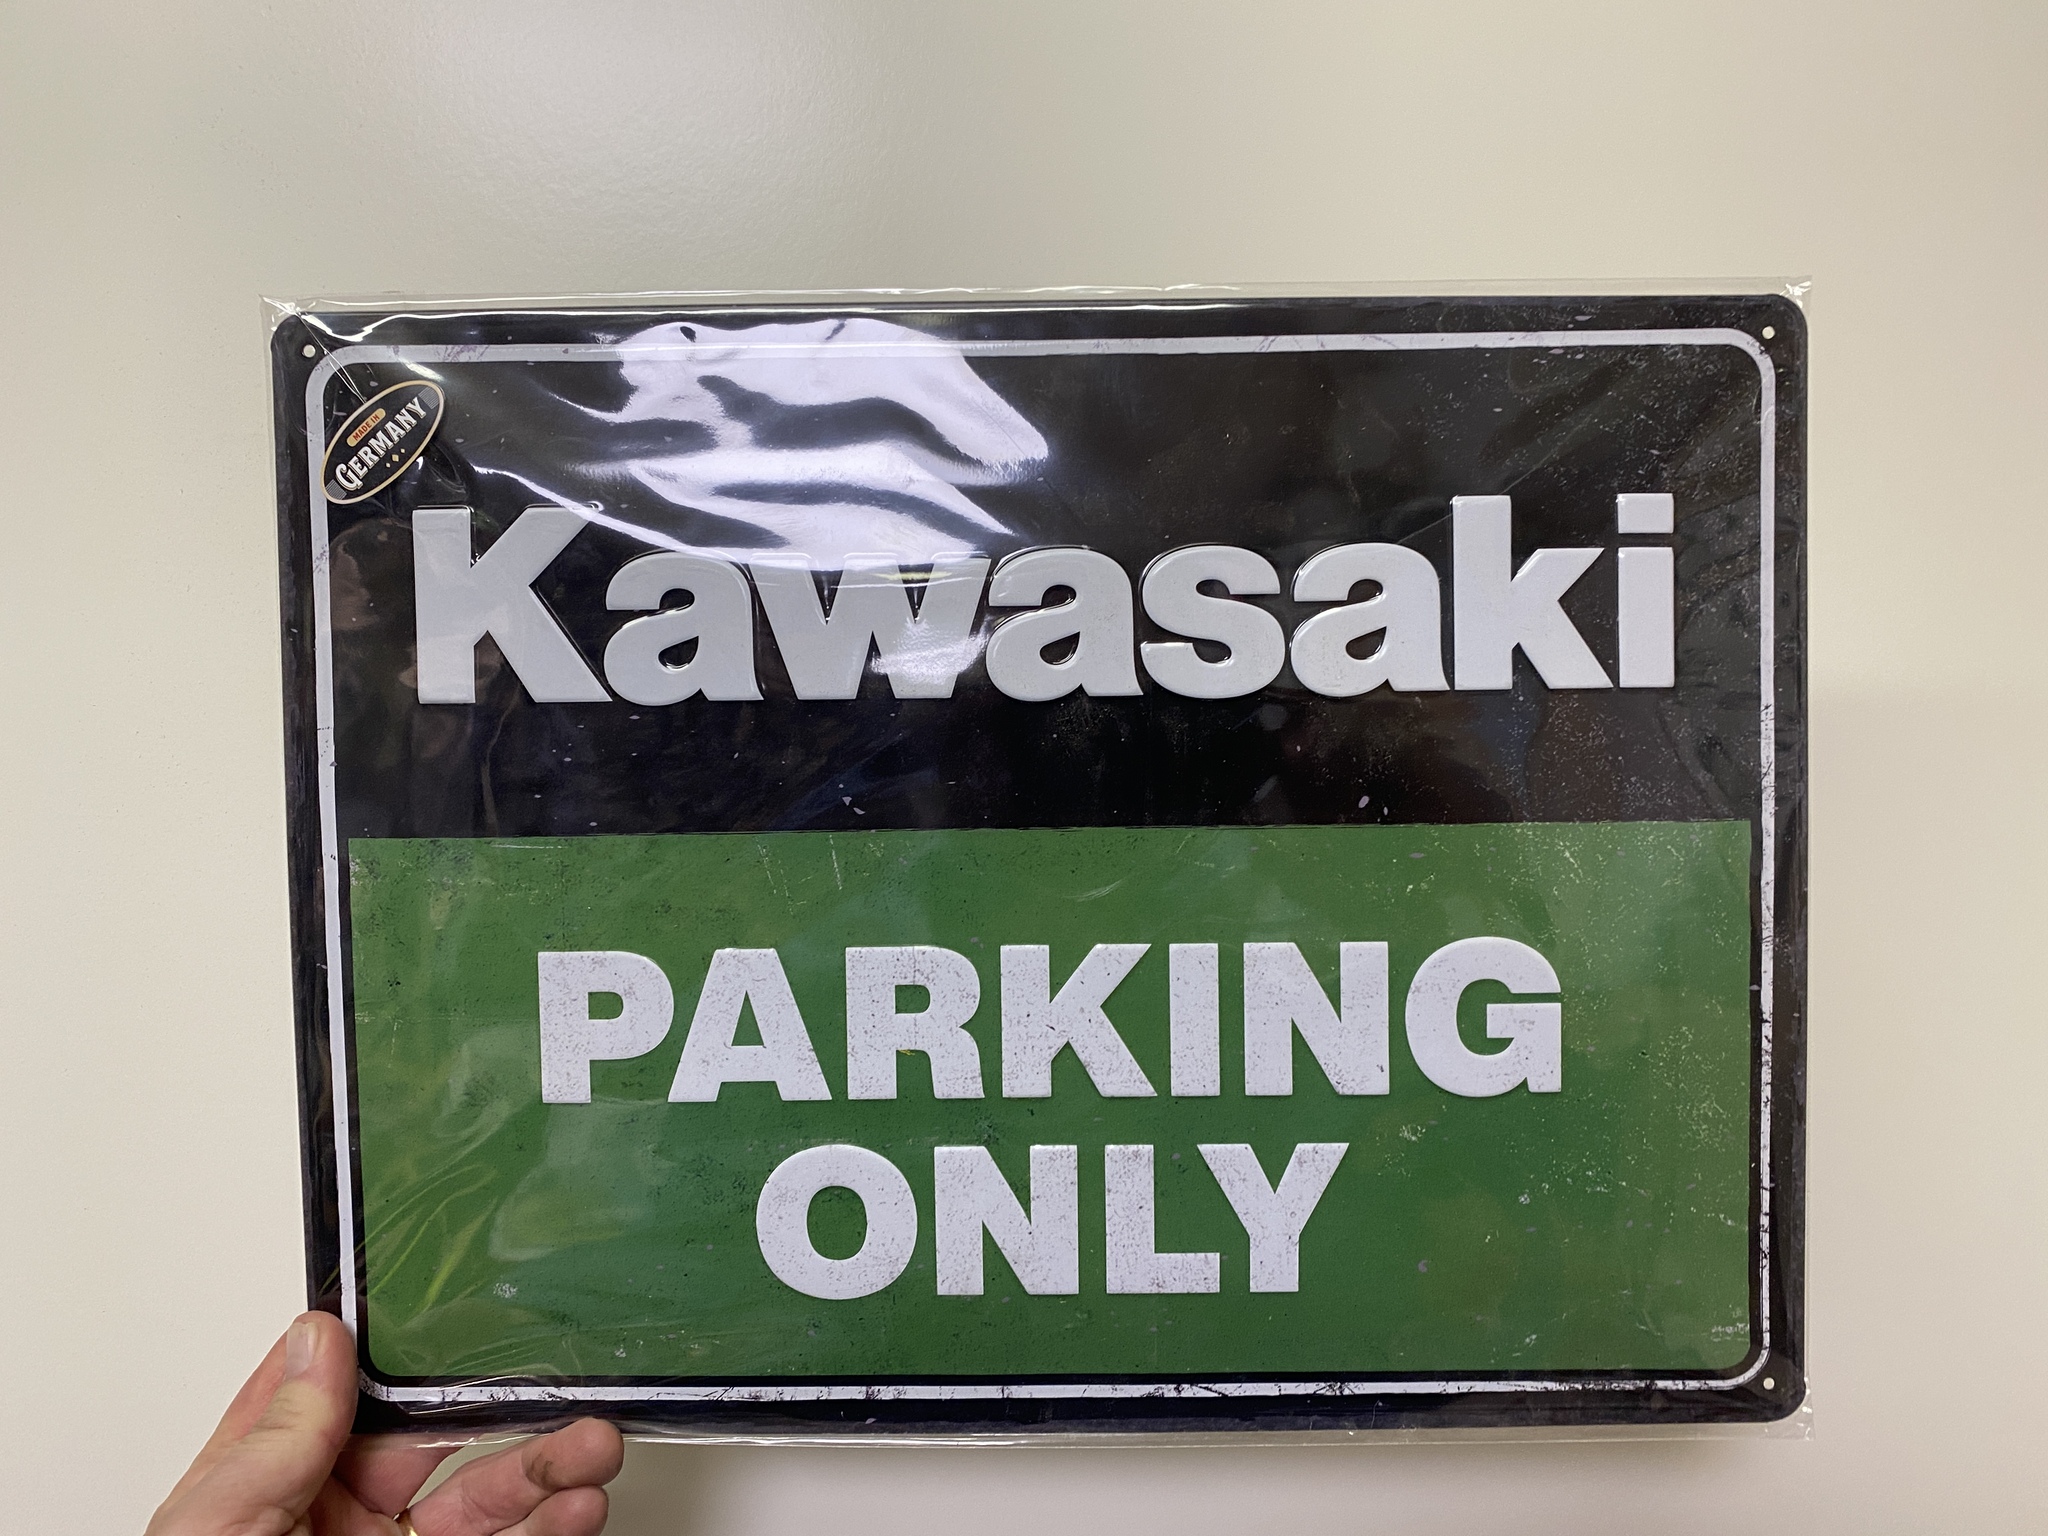 NYHET! Plåtskylt ca 30 x 40 cm Motiv: Kawasaki Parking Only